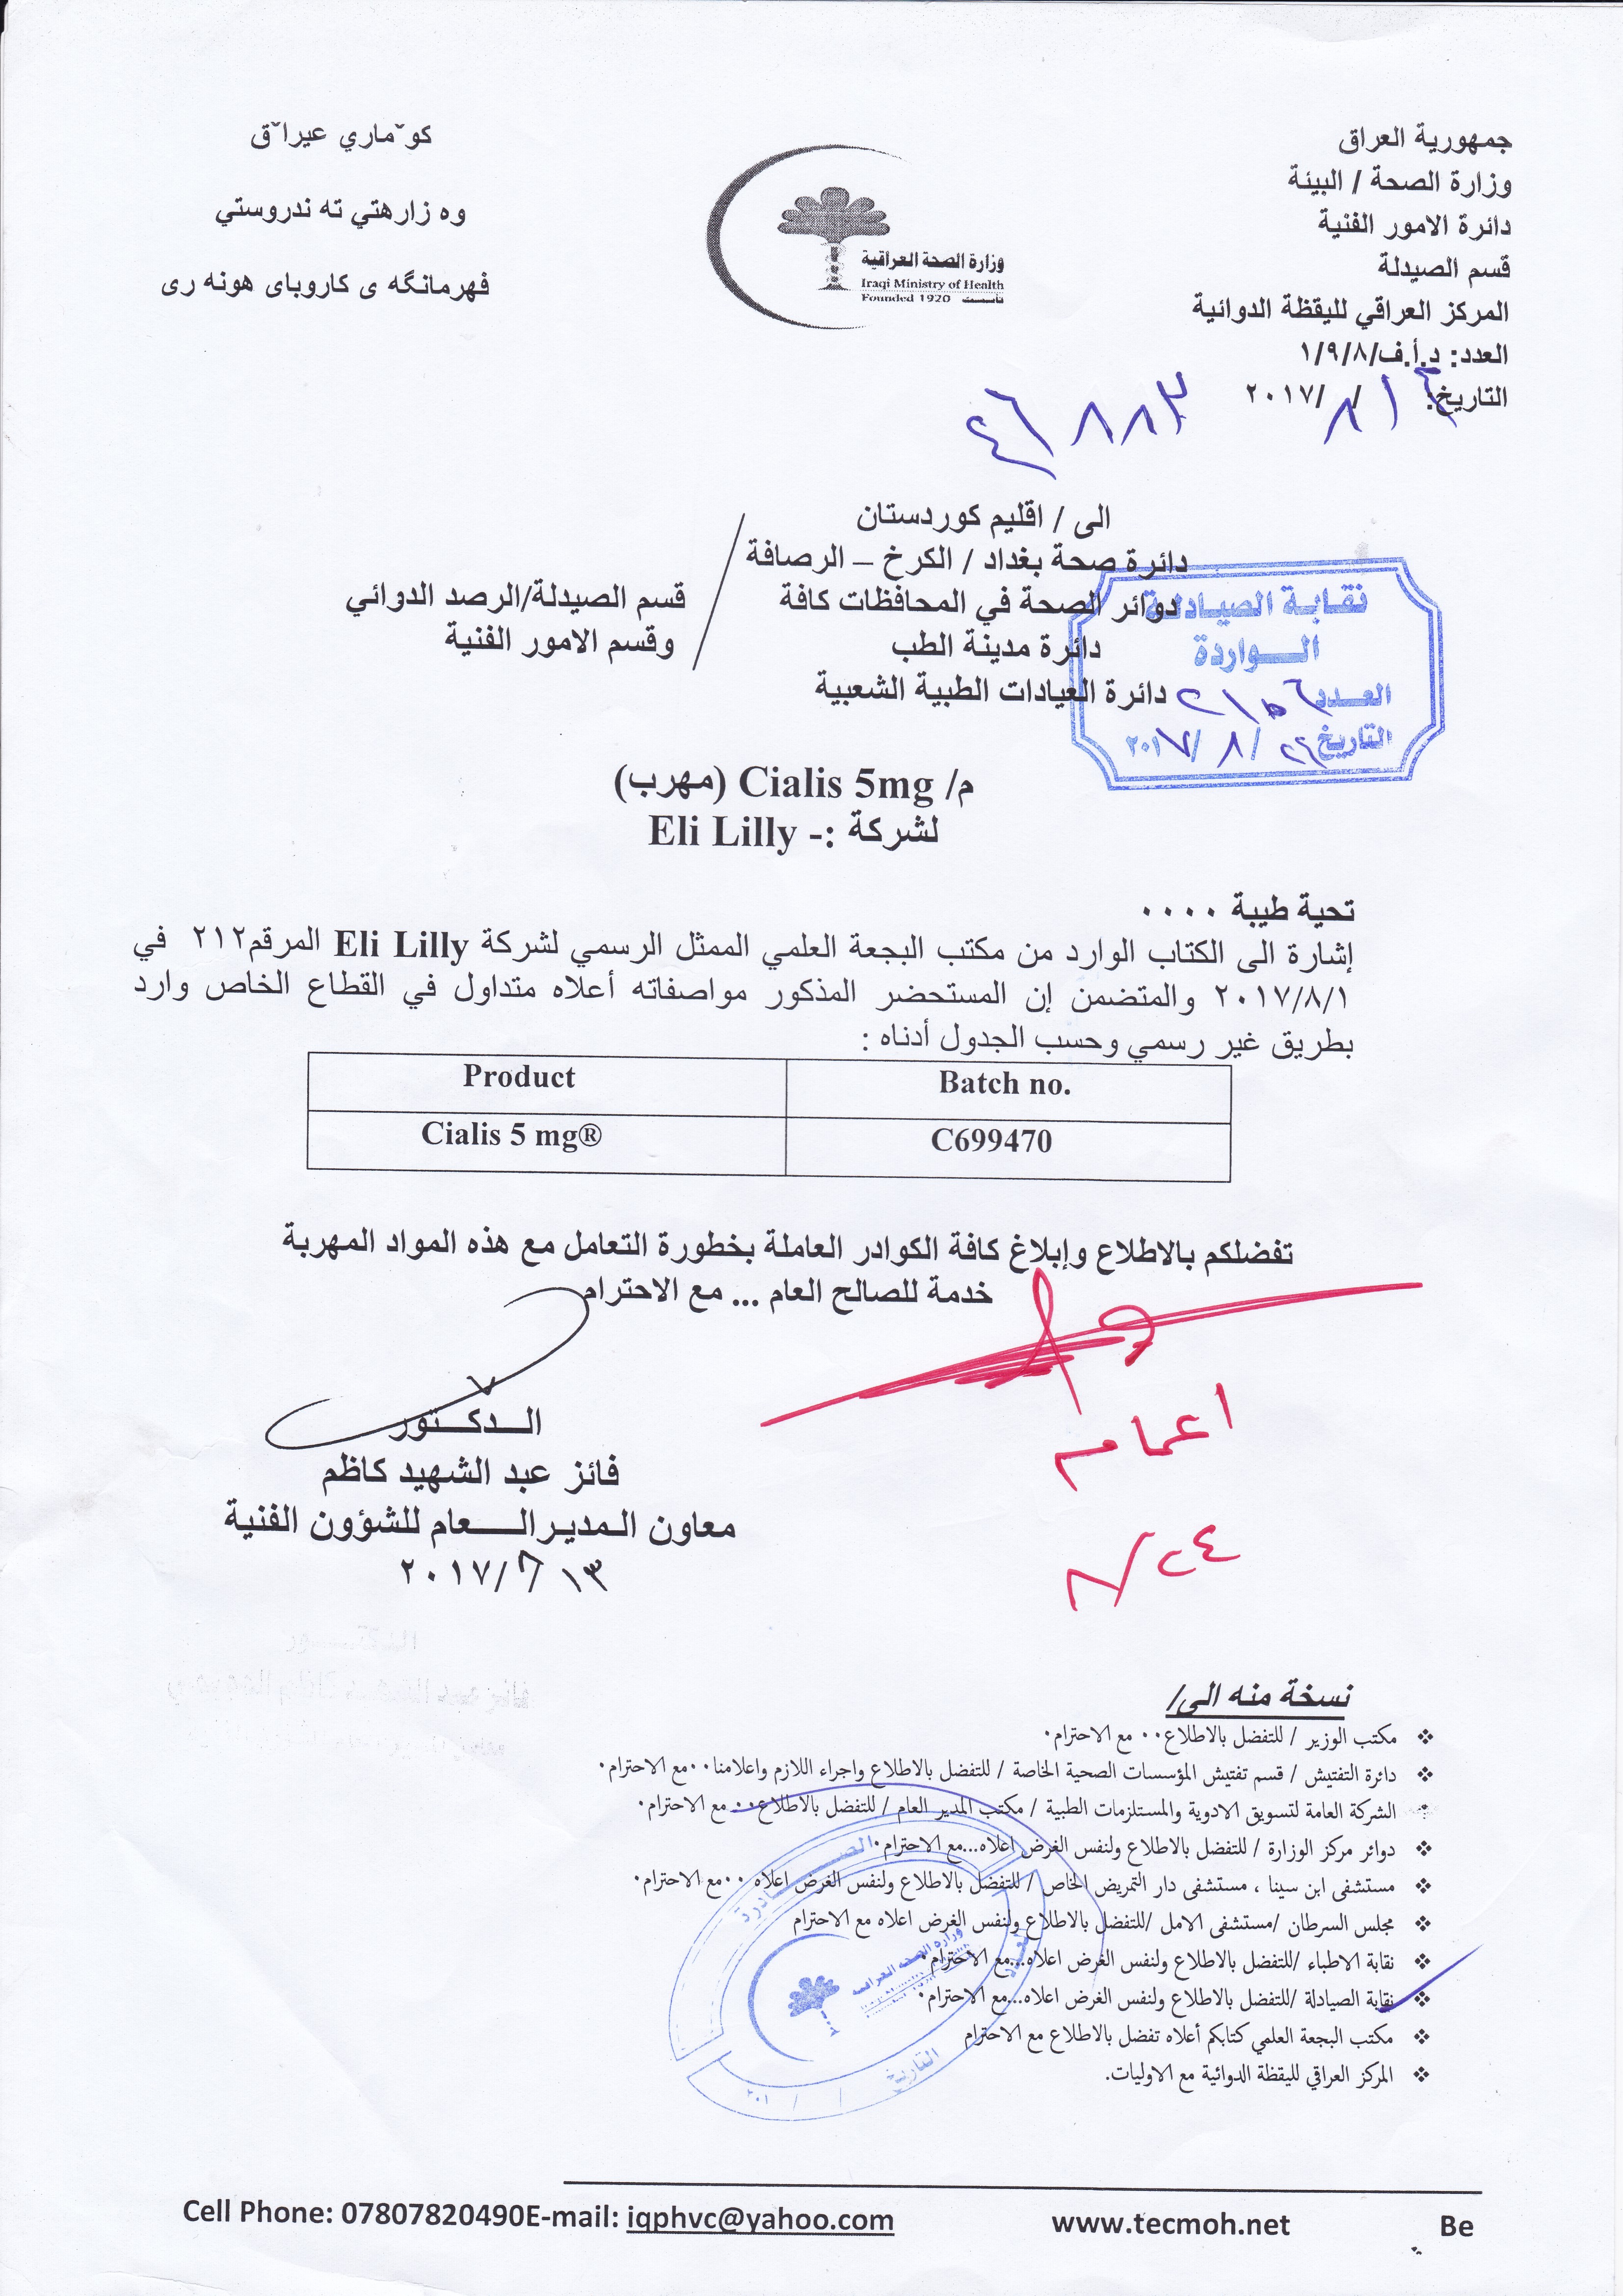 تعميم من وزارة الصحة بخصوص دواء مهرب نقابة صيادلة العراق